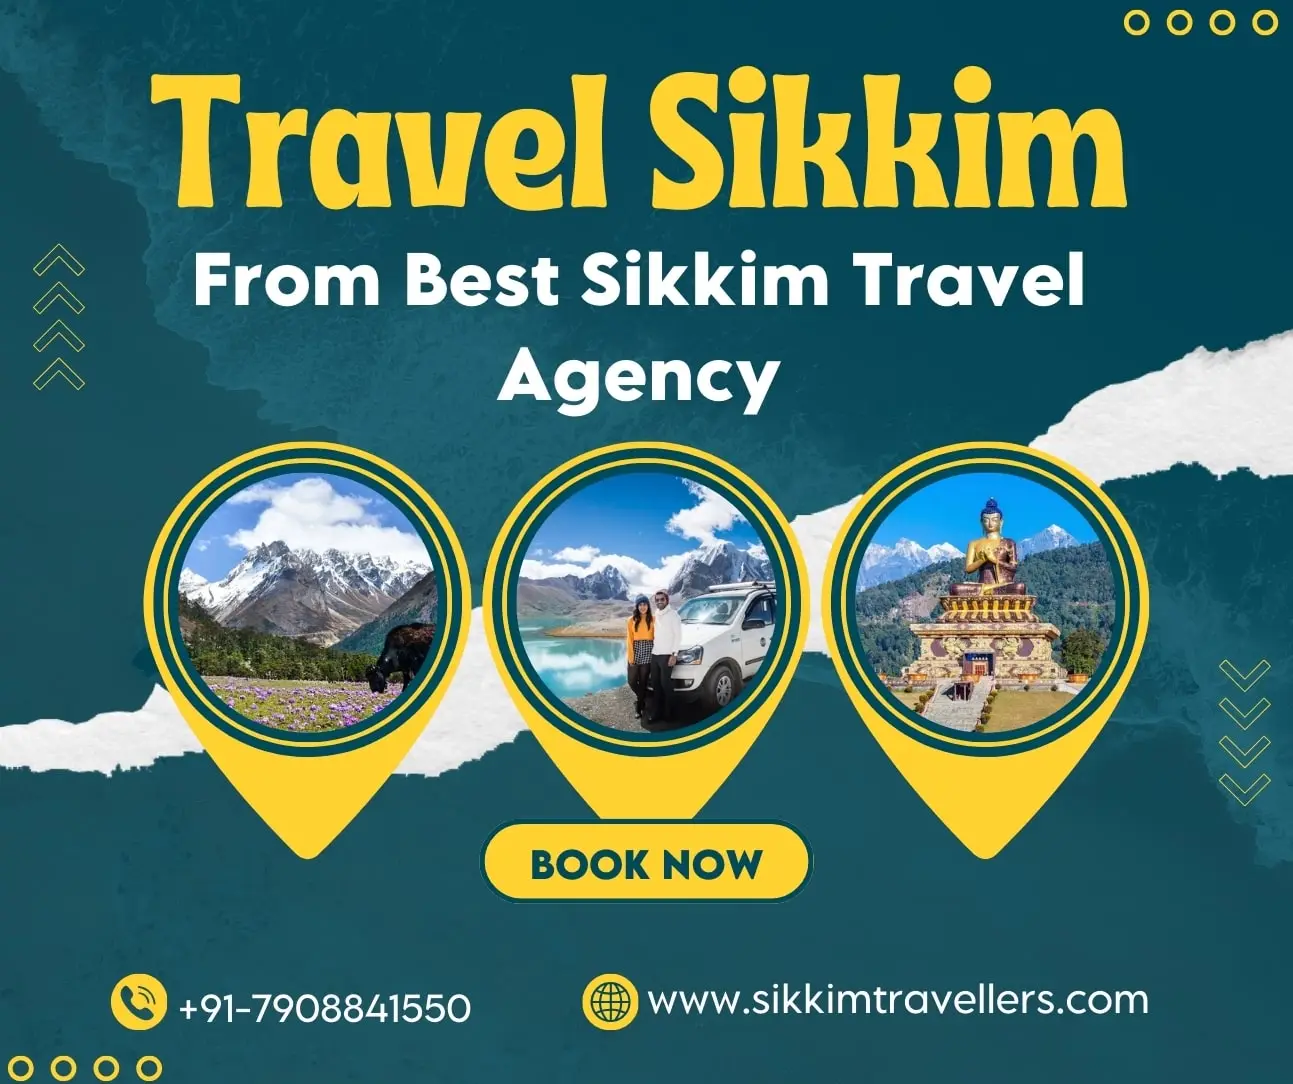 Sikkim Taxi